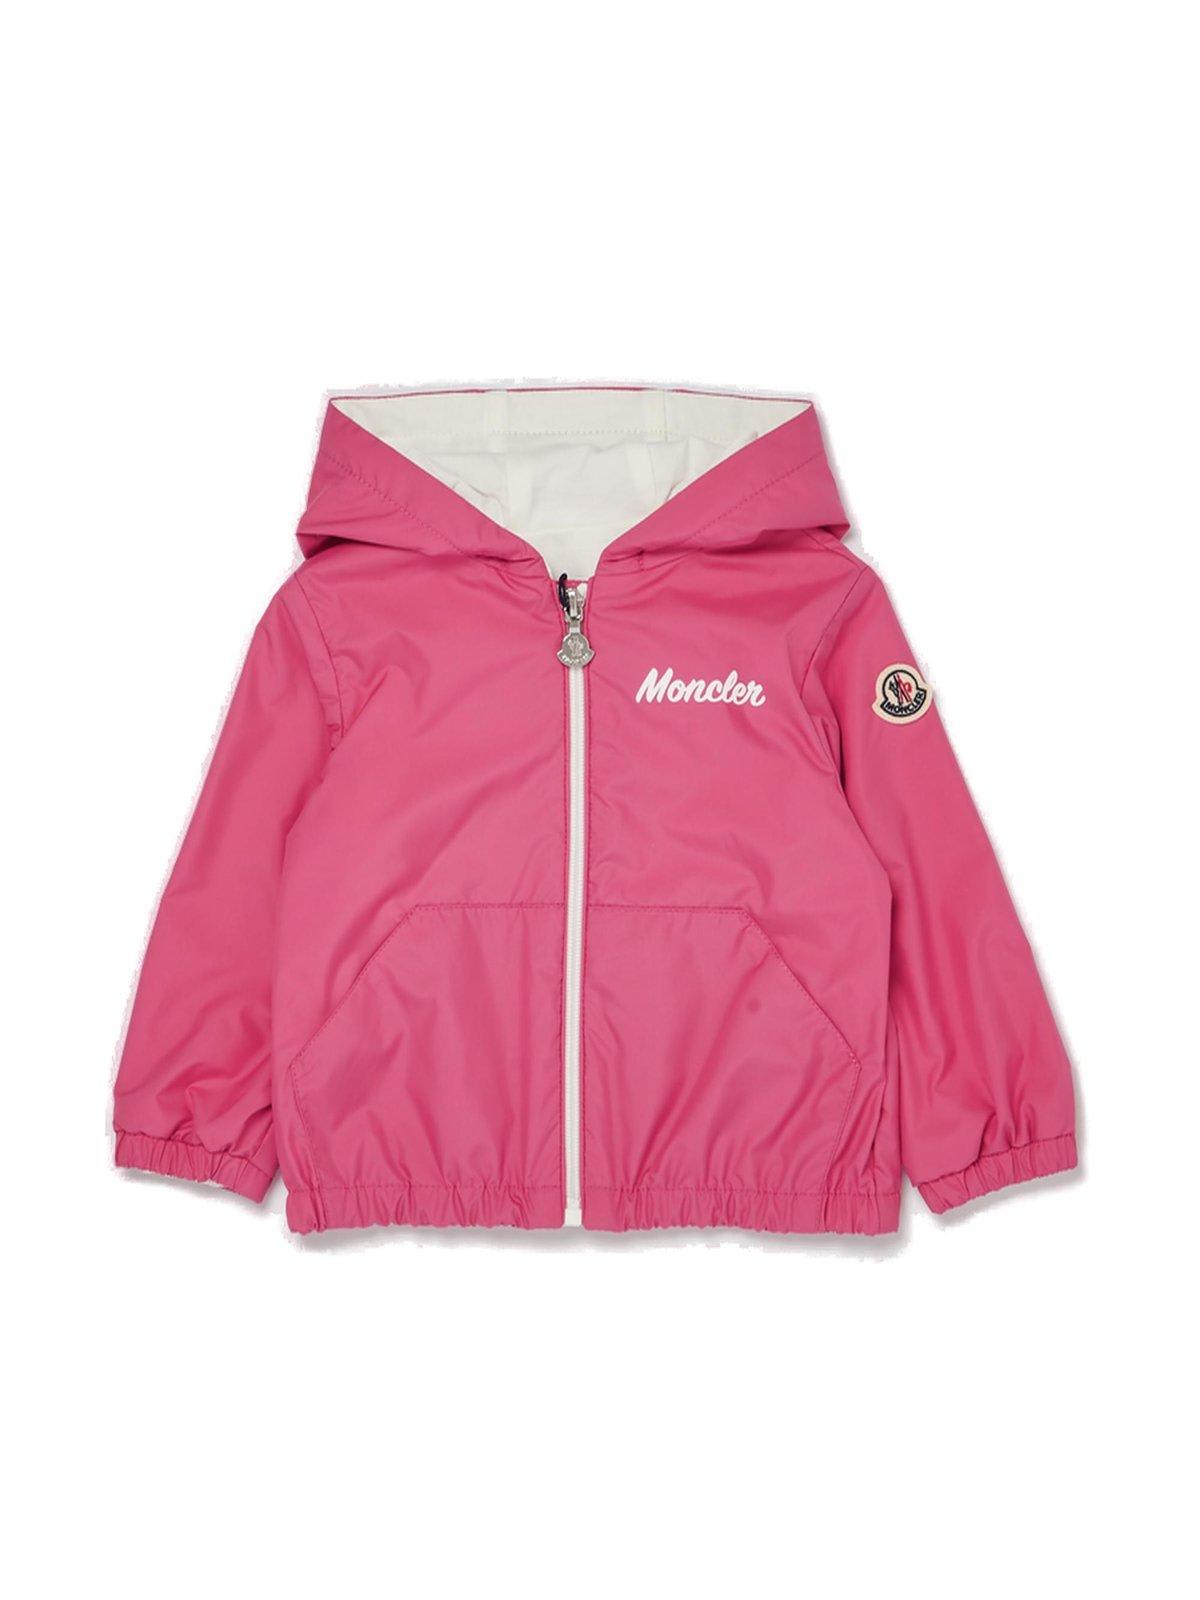 Moncler Kids' Evanthe Hooded Jacket In Pink